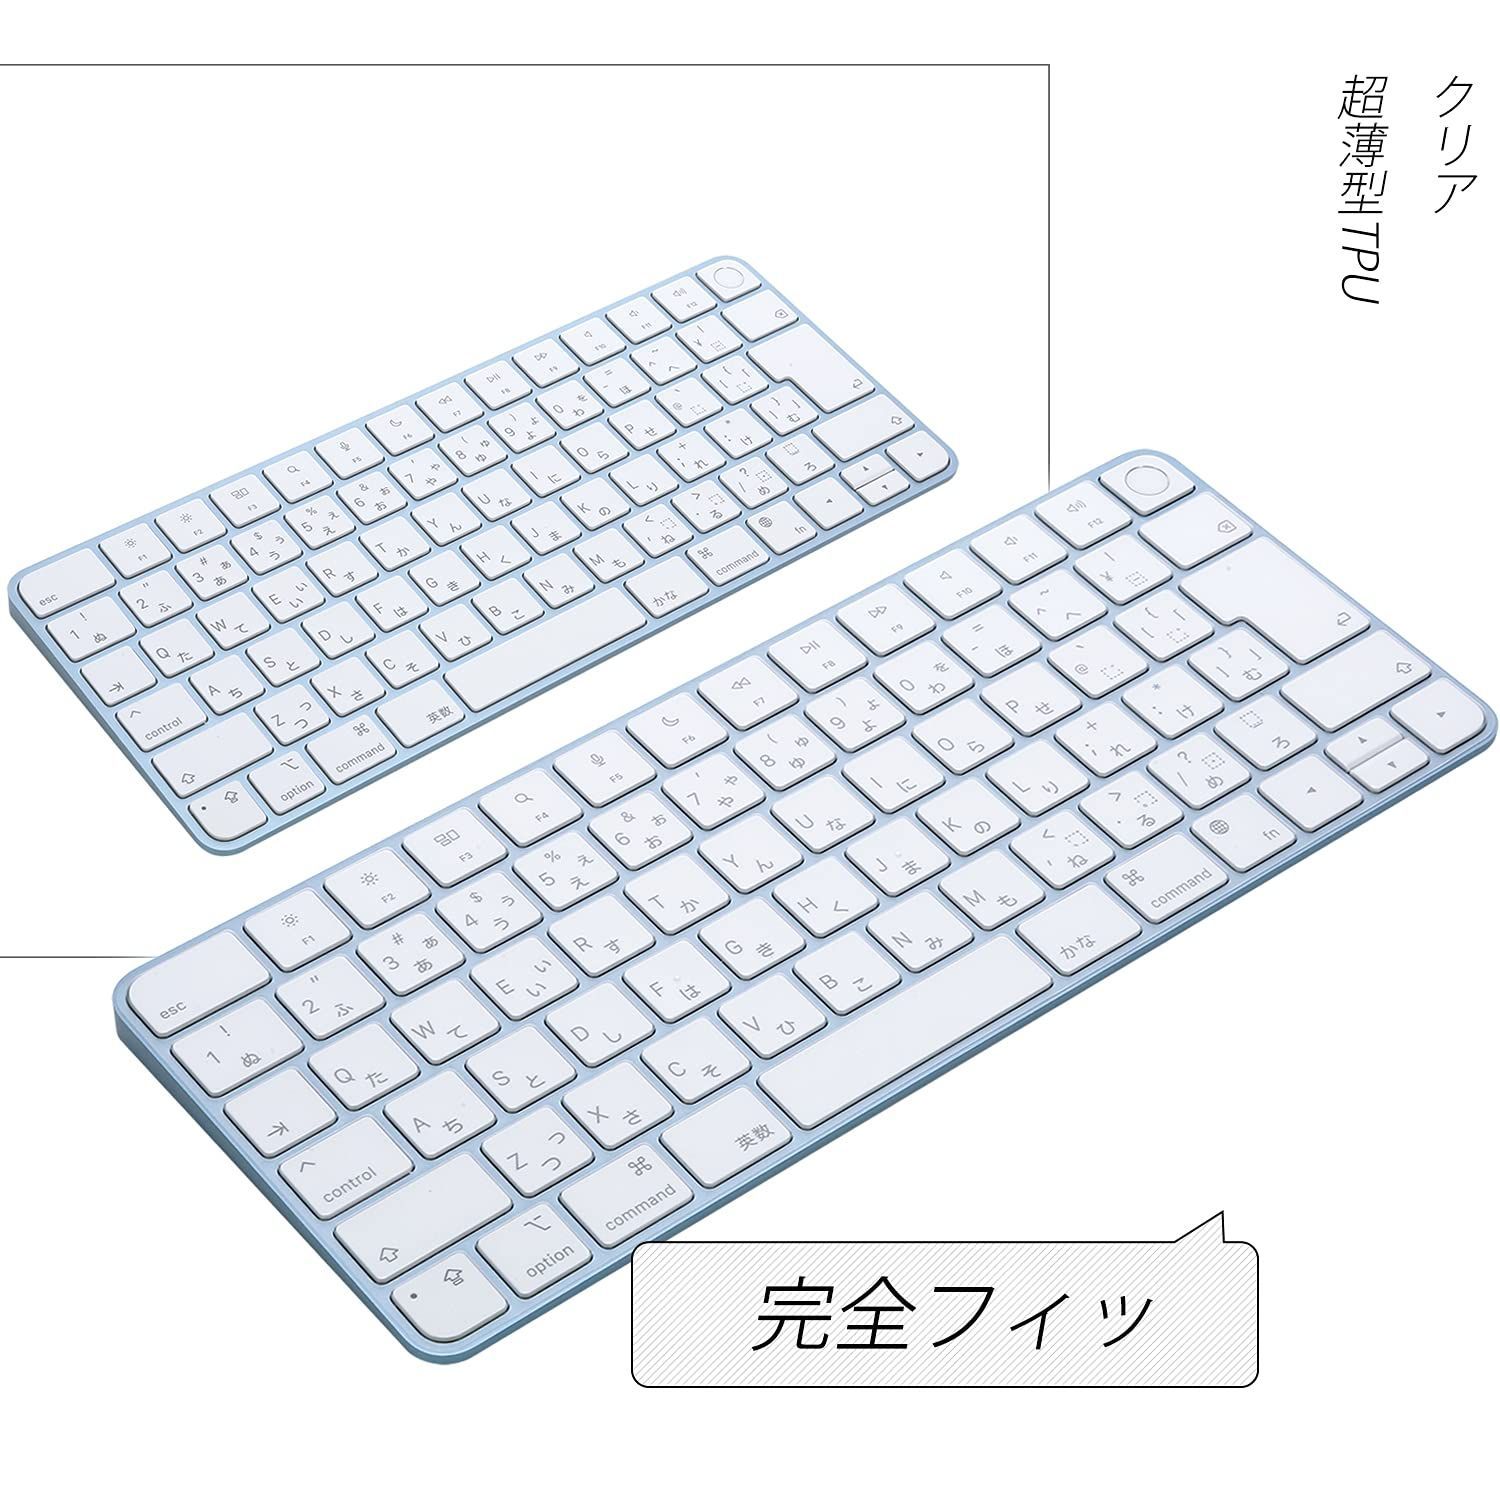 特価商品】iMac Magic Keyboard 用 キーボードカバー 対応 日本語JIS